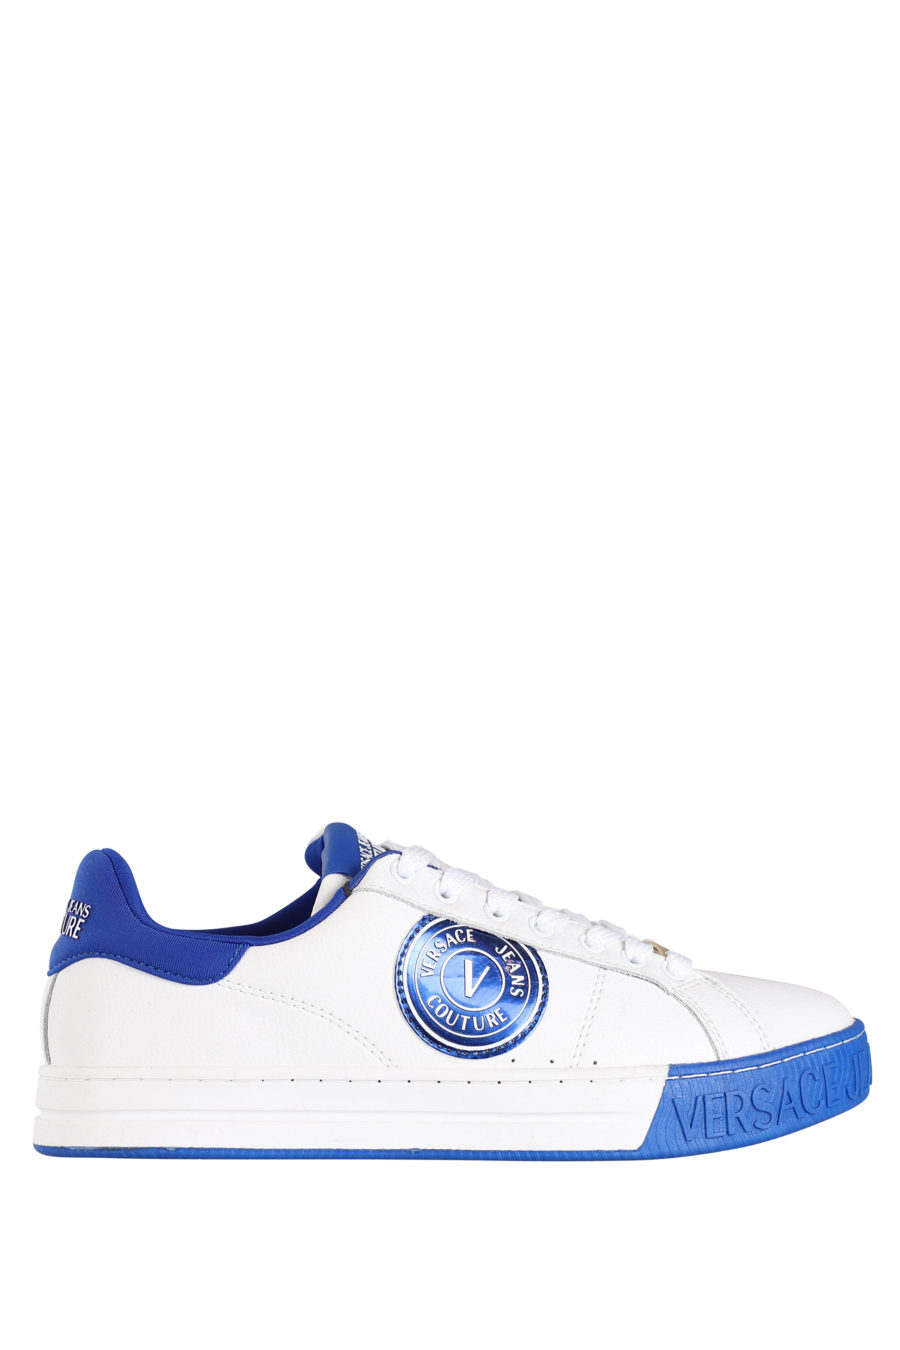 Zapatillas blancas con detalles azul - IMG 9800